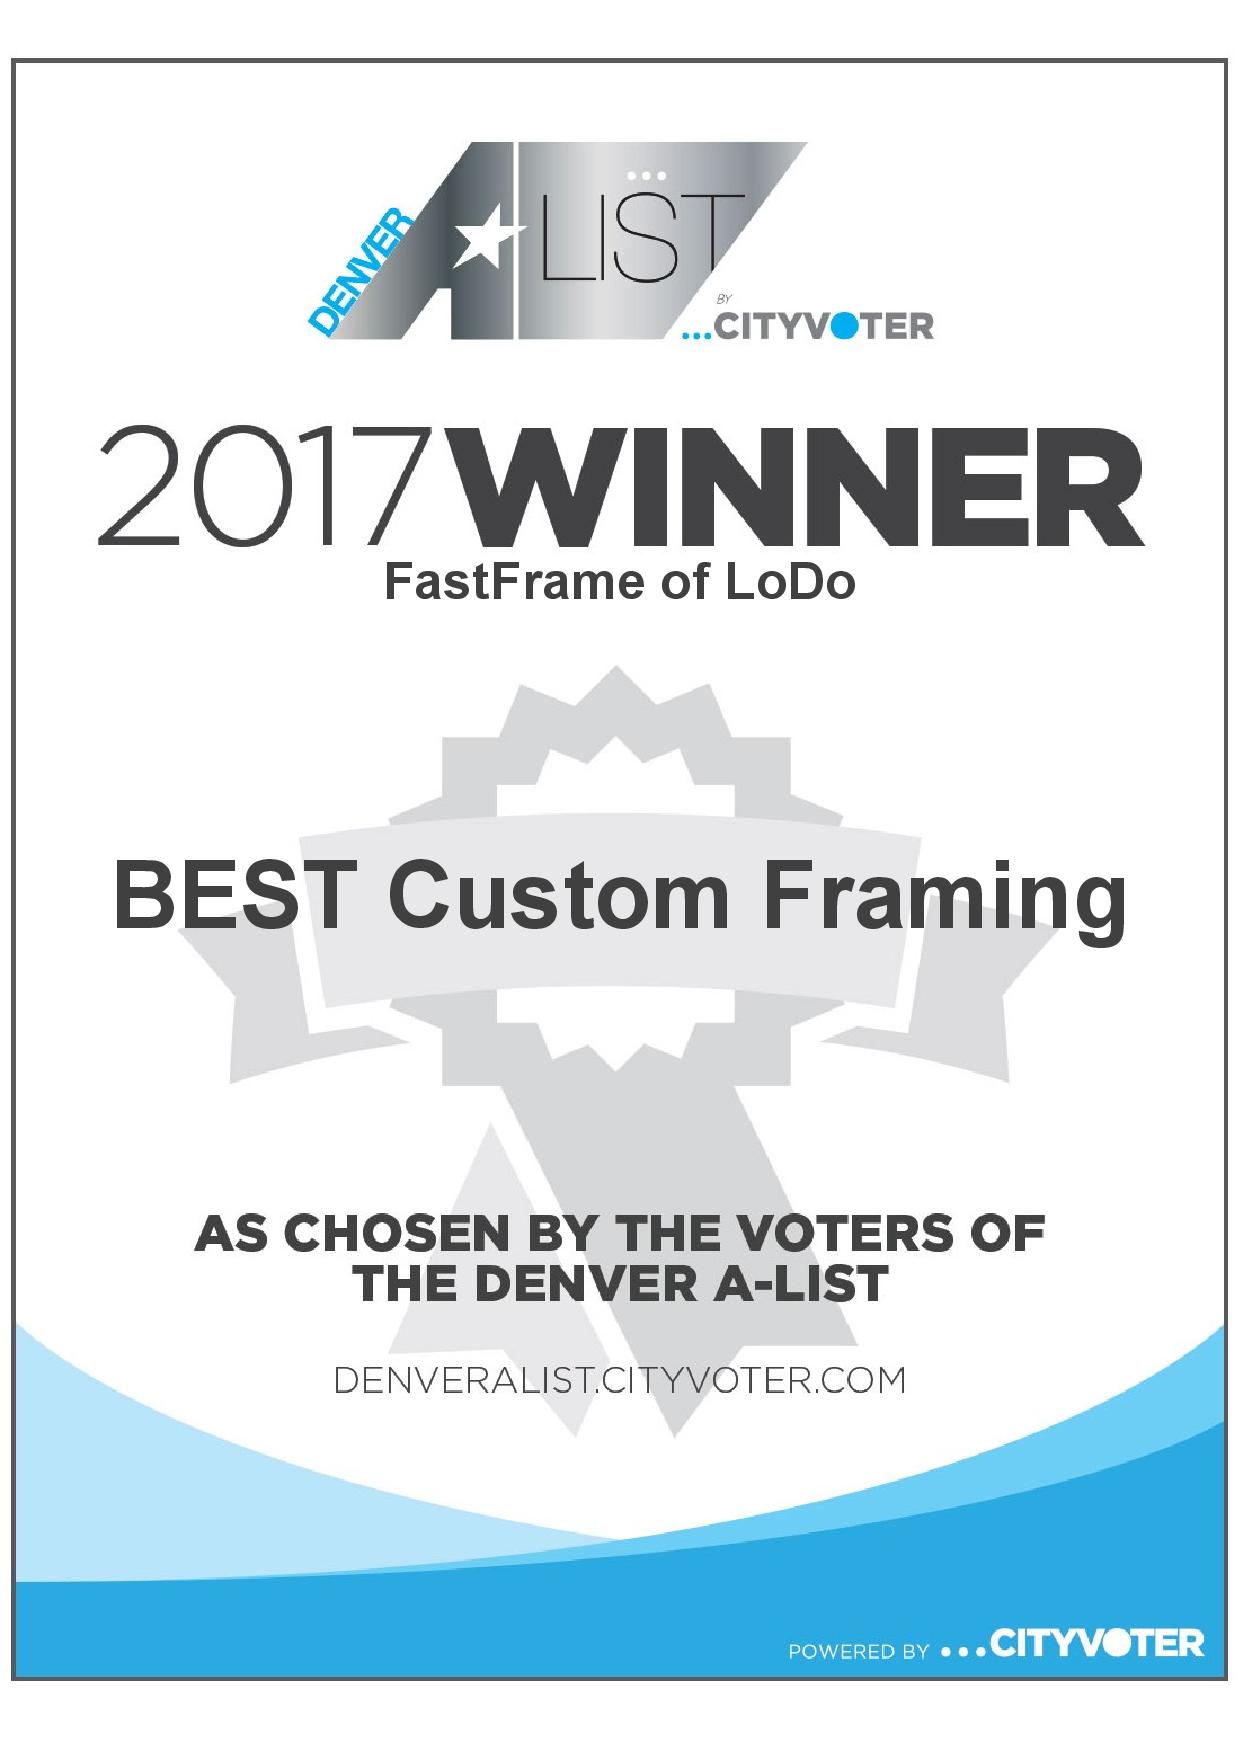 FastFrame of LoDo - Voted Best Custom Framing in Denver! 